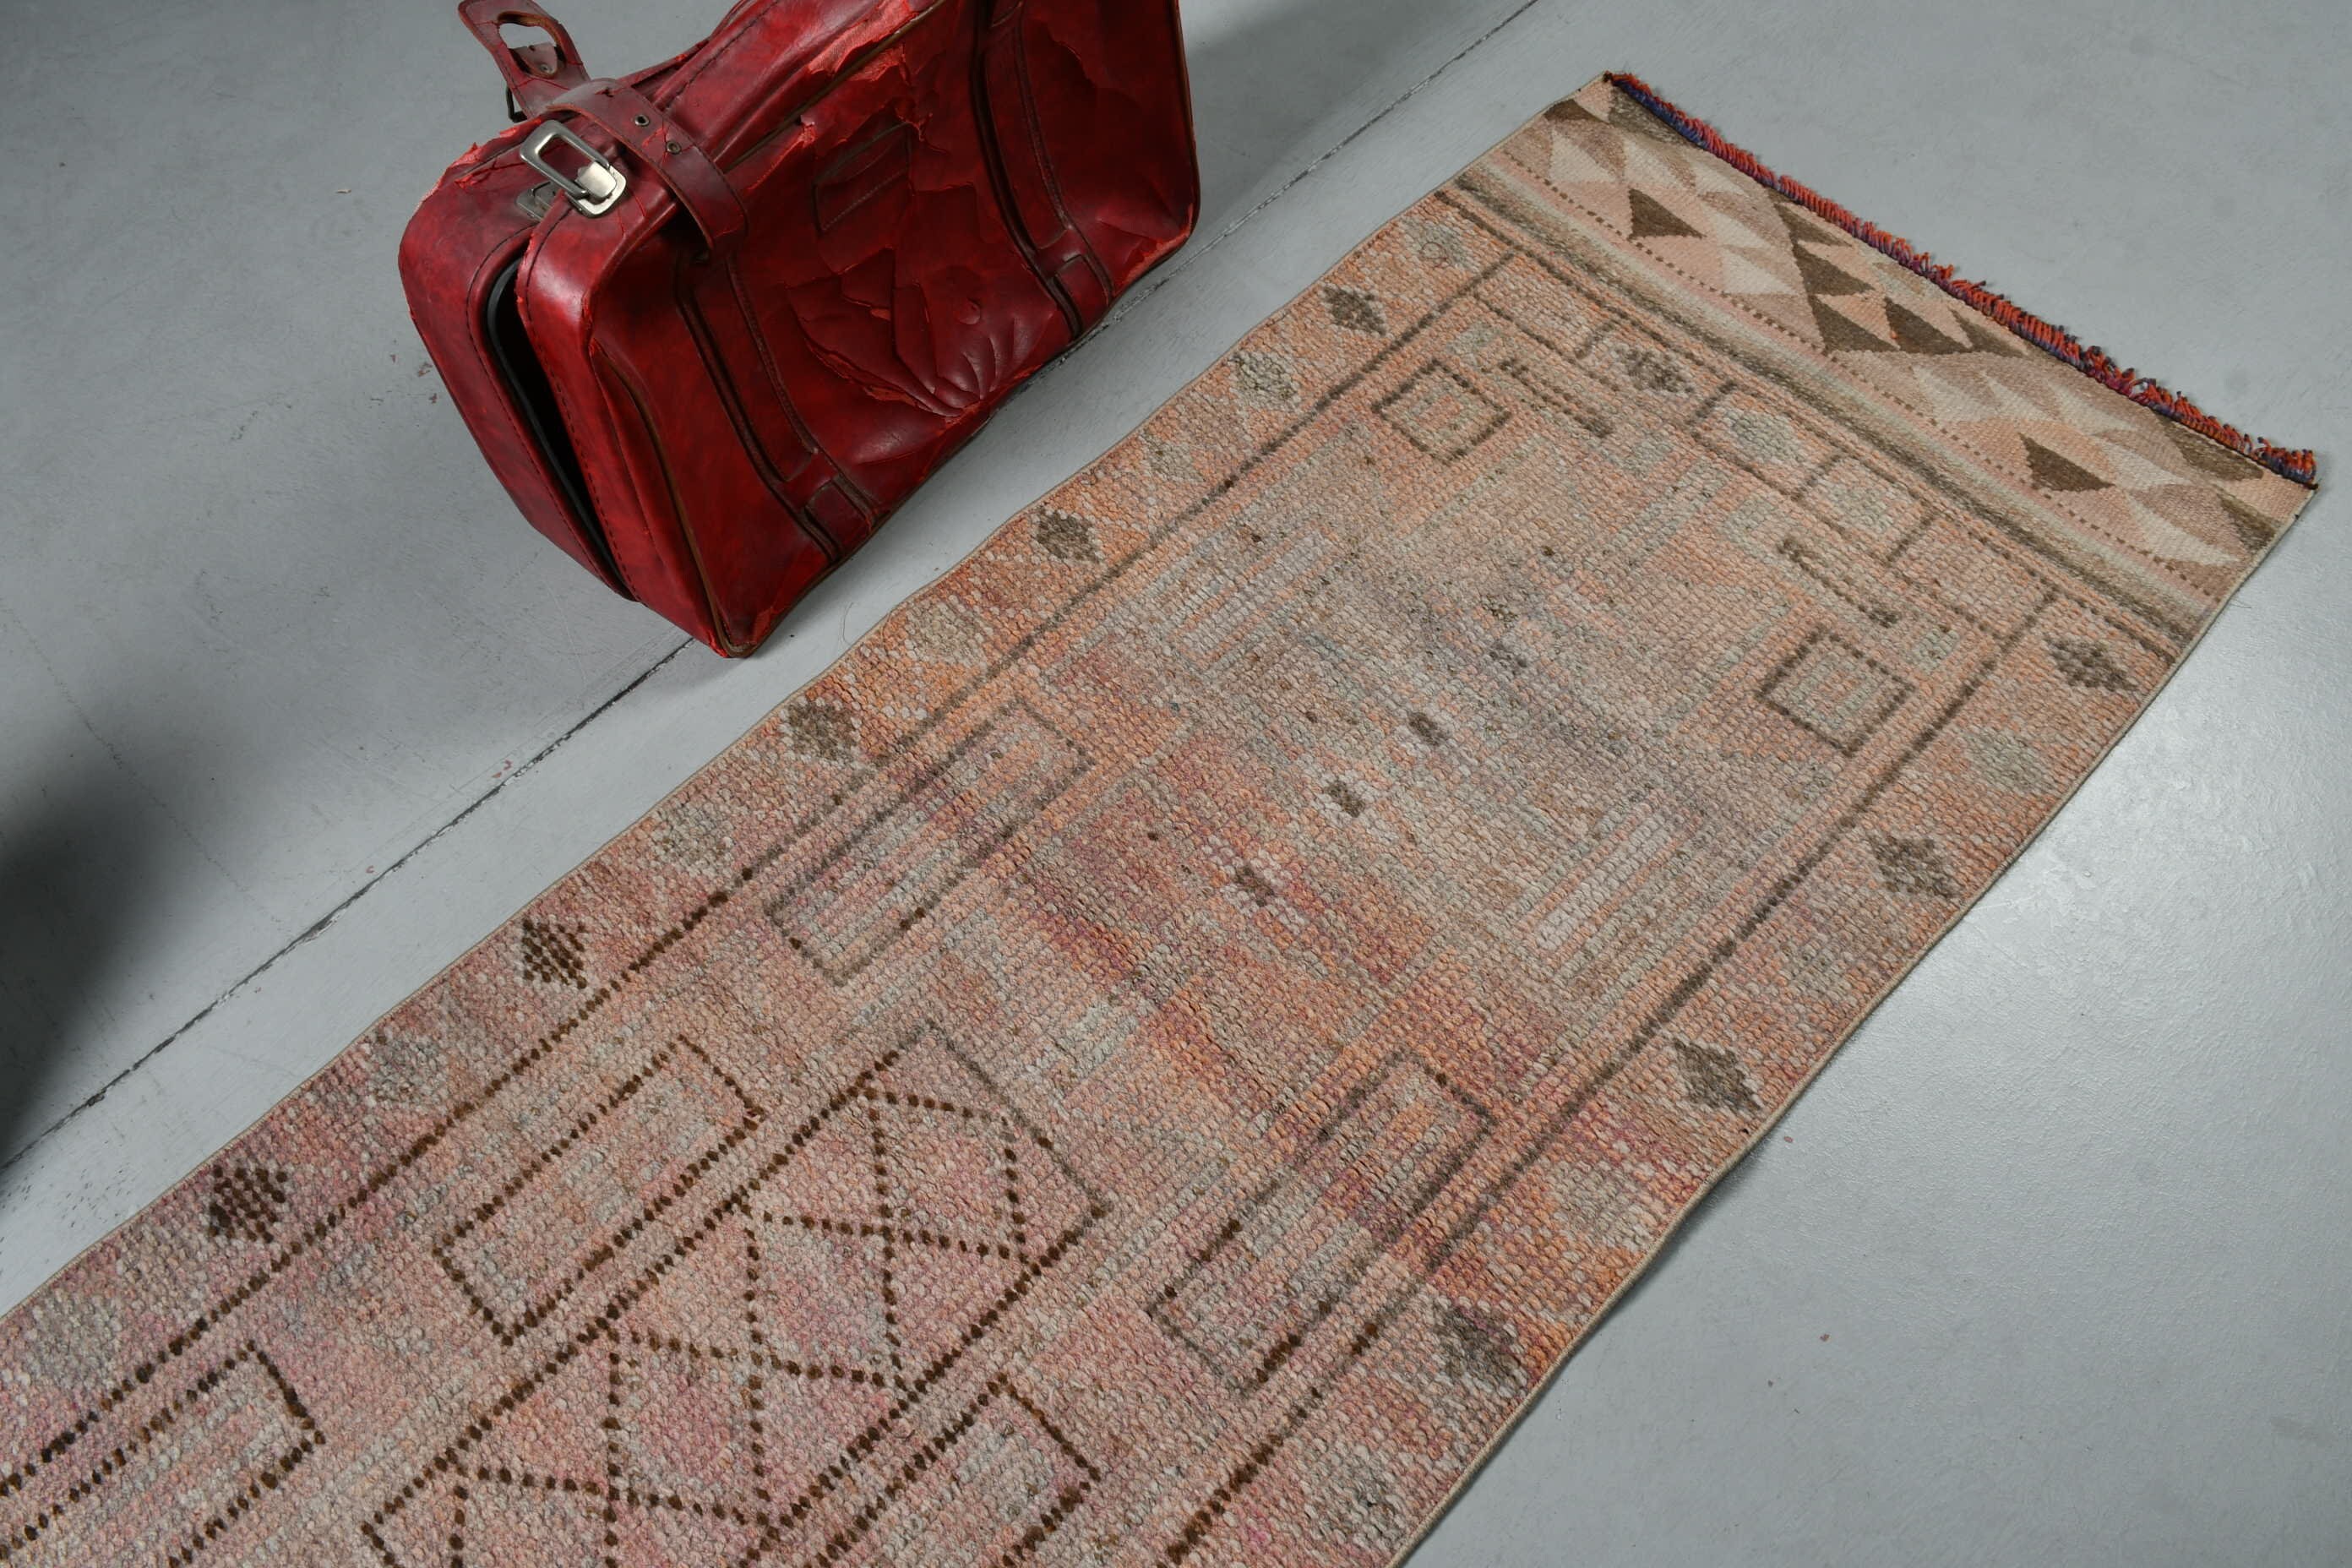 Art Rugs, Turkish Rug, Hallway Rug, 2.5x9.5 ft Runner Rugs, Vintage Rug, Rugs for Corridor, Beige Antique Rug, Wool Rug